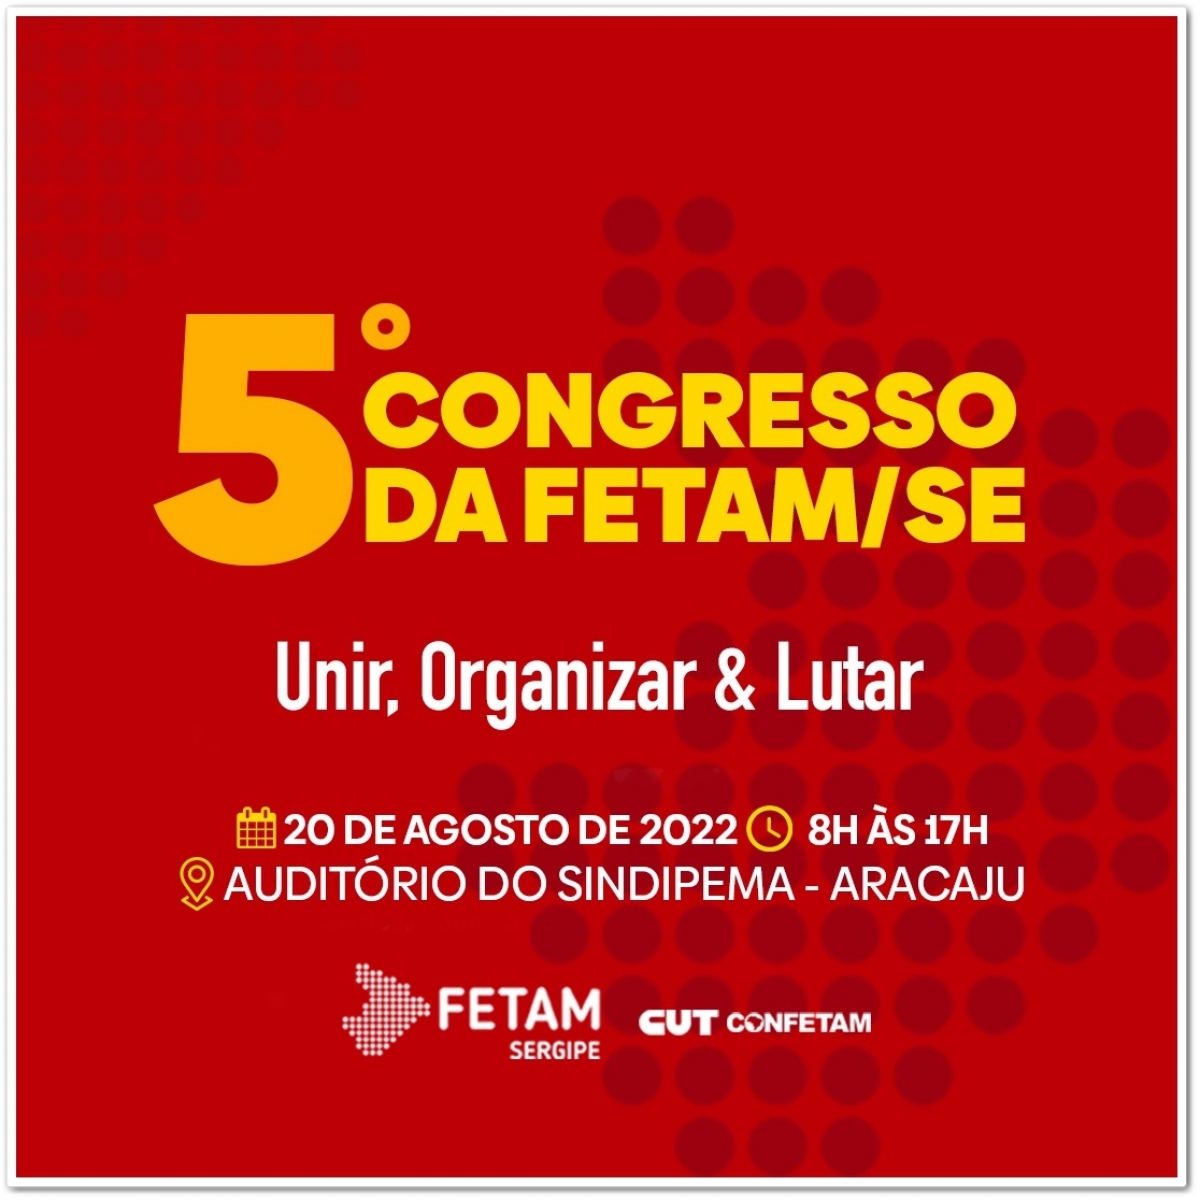 FETAM/SE realiza o 5º Congresso dos servidores municipais - Imagem: Divulgação | FETAM/SE